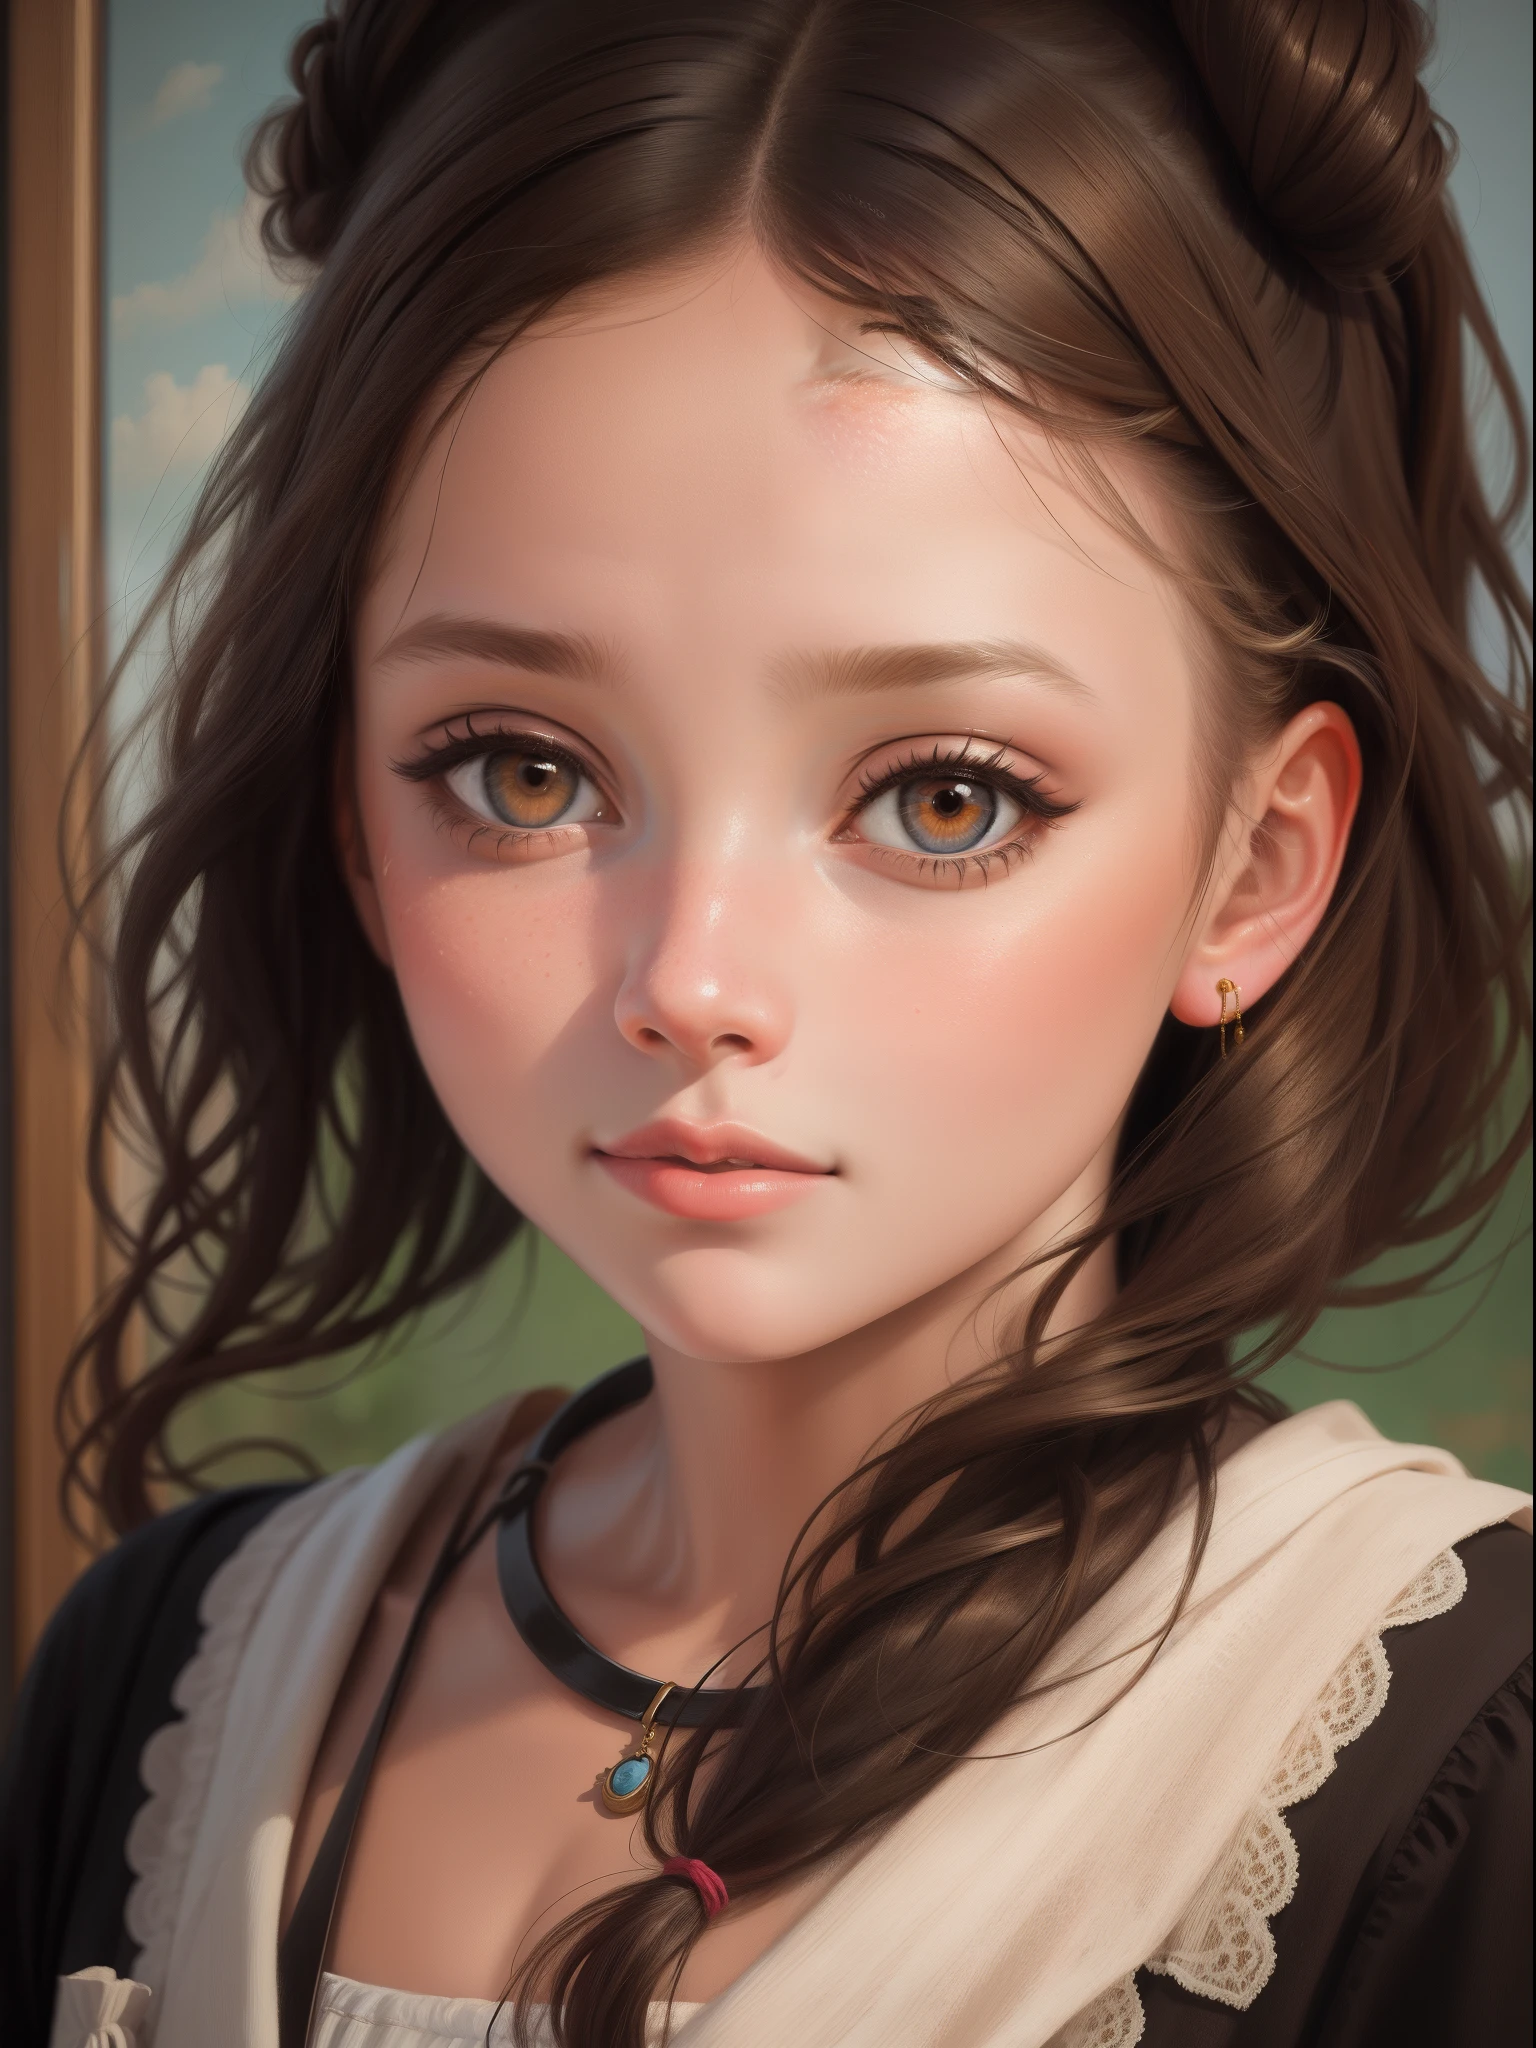 "Retrato en primer plano de una niña en un estilo de pintura al óleo."